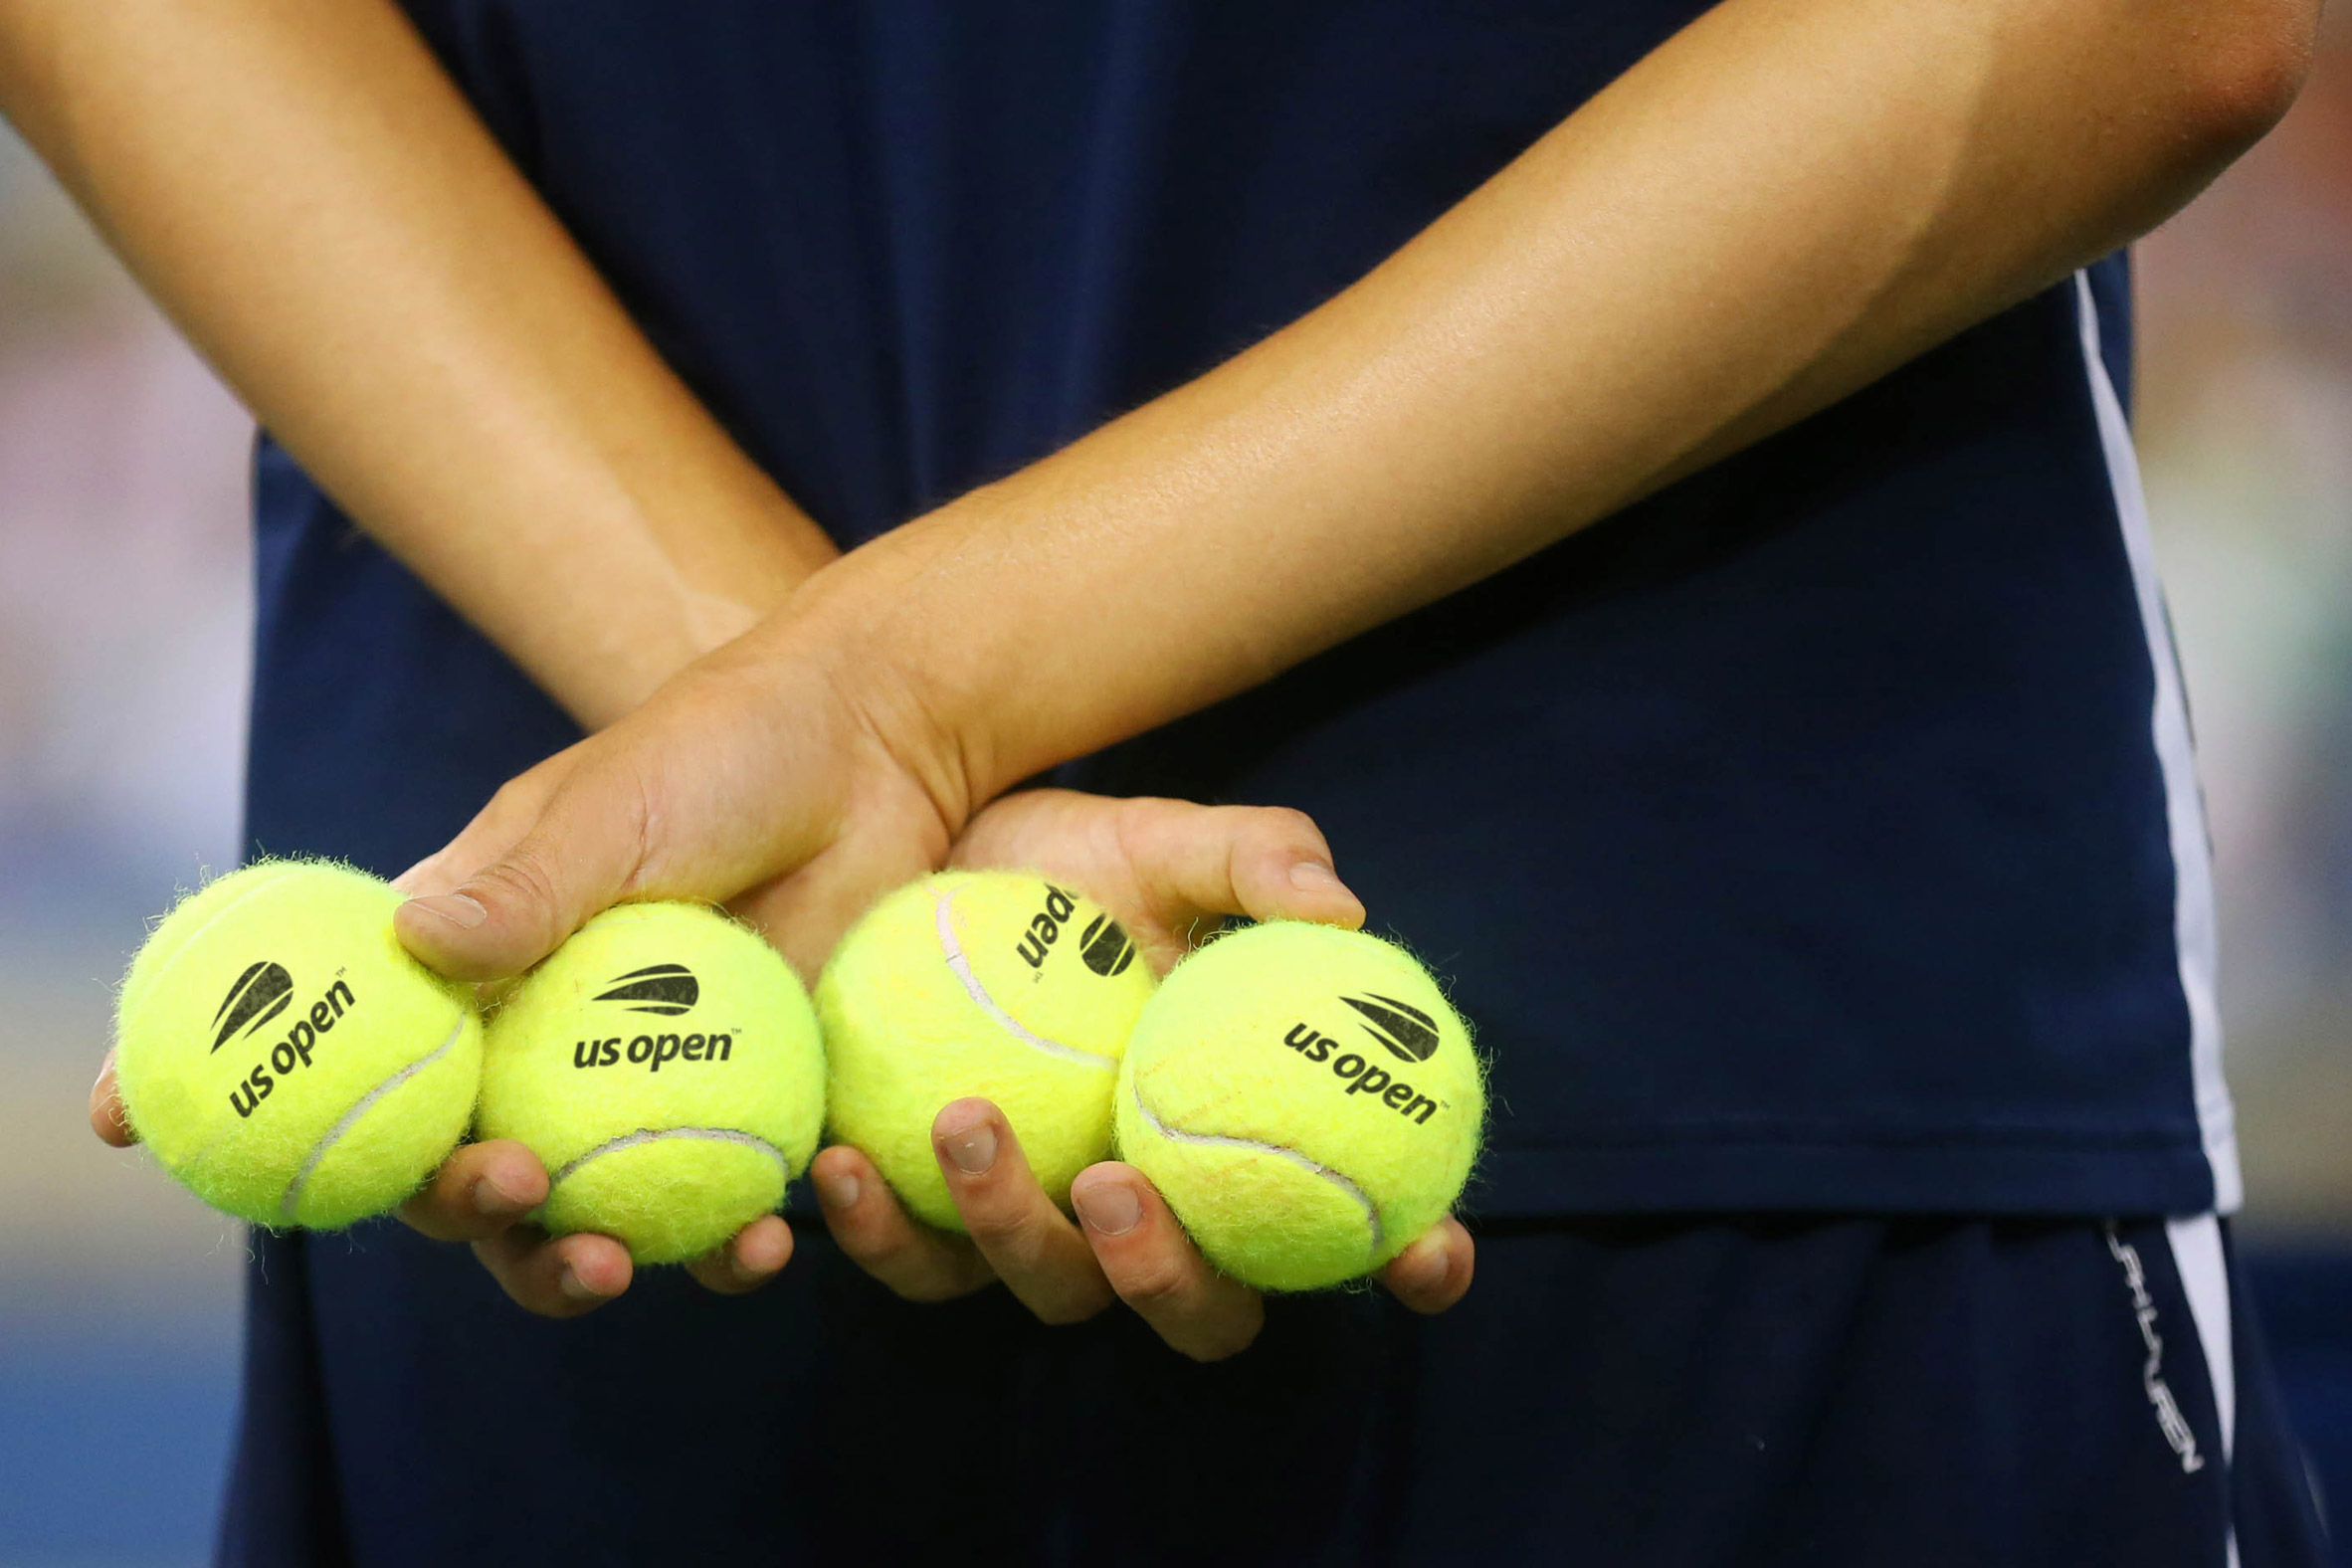 Sphere in Las Vegas displays tennis ball for U.S. Open Finals